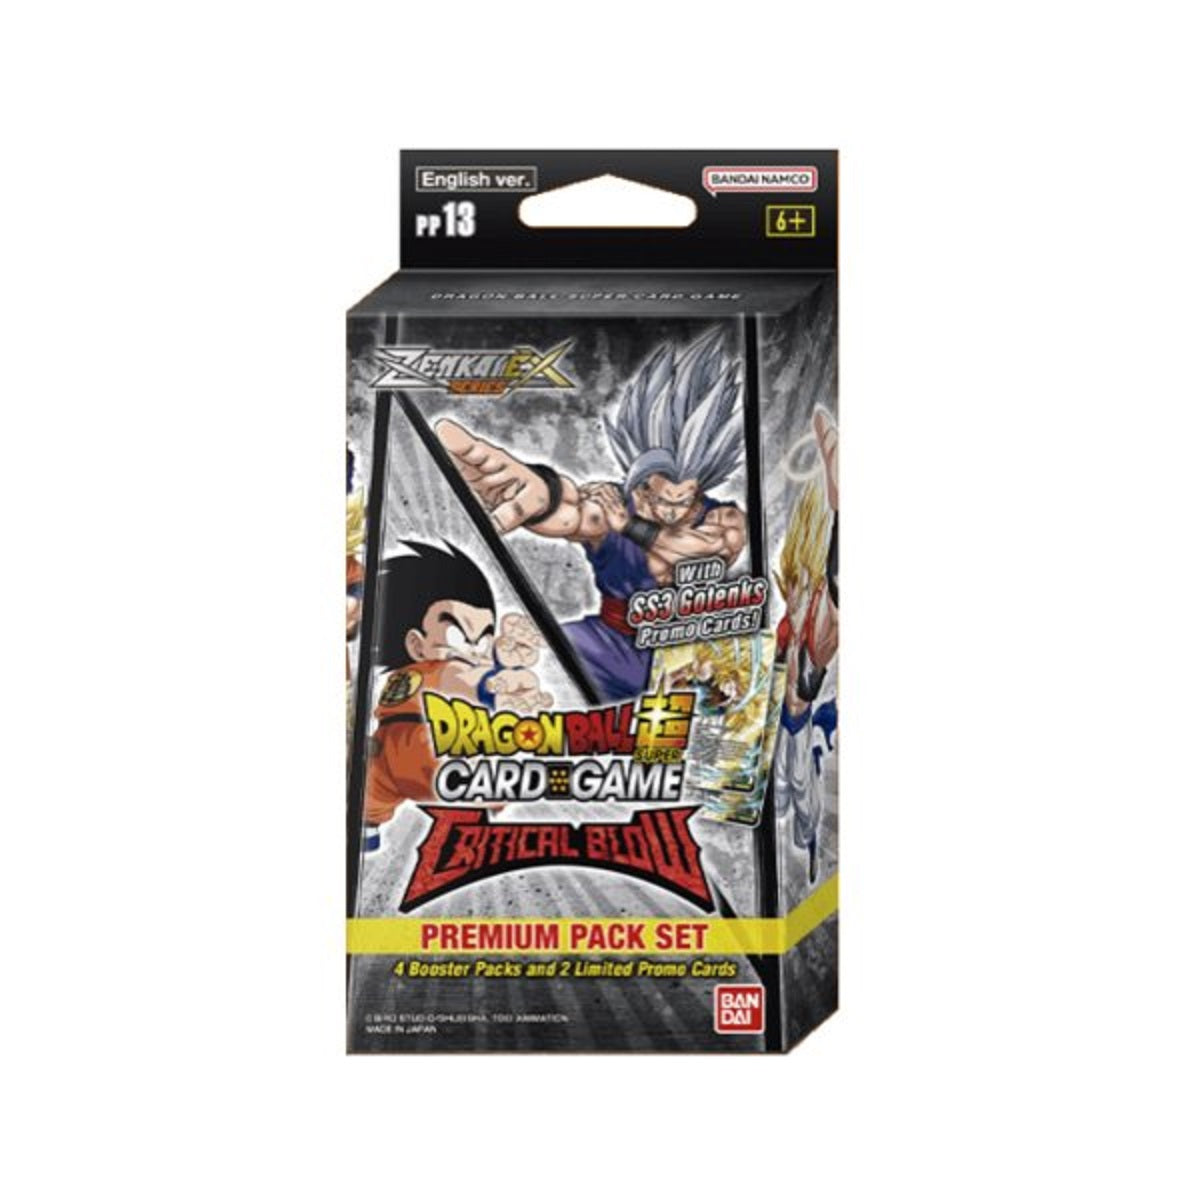 Dragon Ball Super Premium Pack - Zenkai Series Set 05 PP13 - Critical Blow (englisch) - 4 Booster Packs